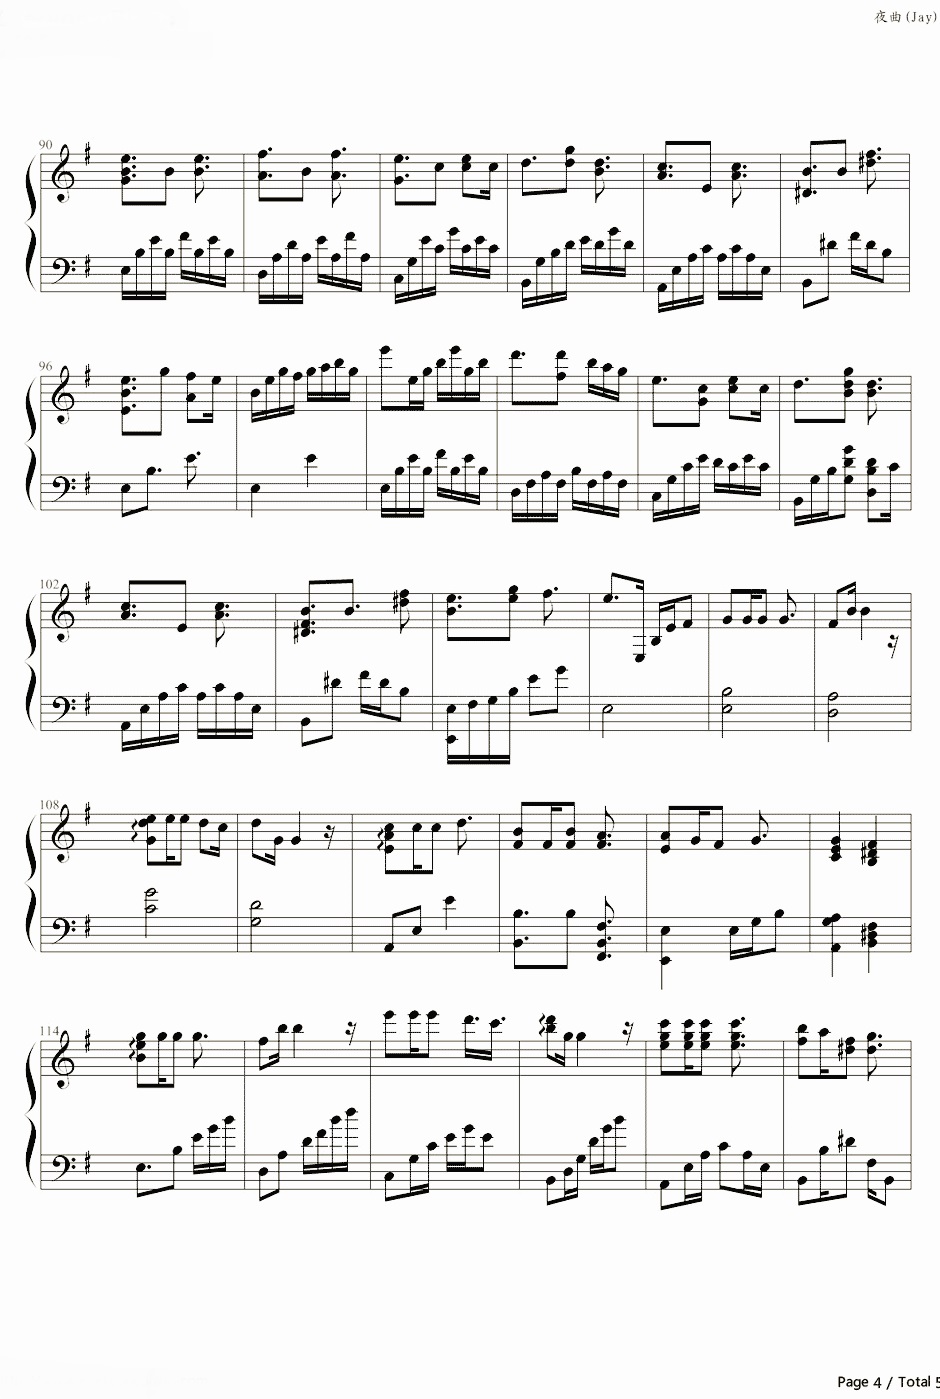 【夜曲】的钢琴谱简谱 – 周杰伦